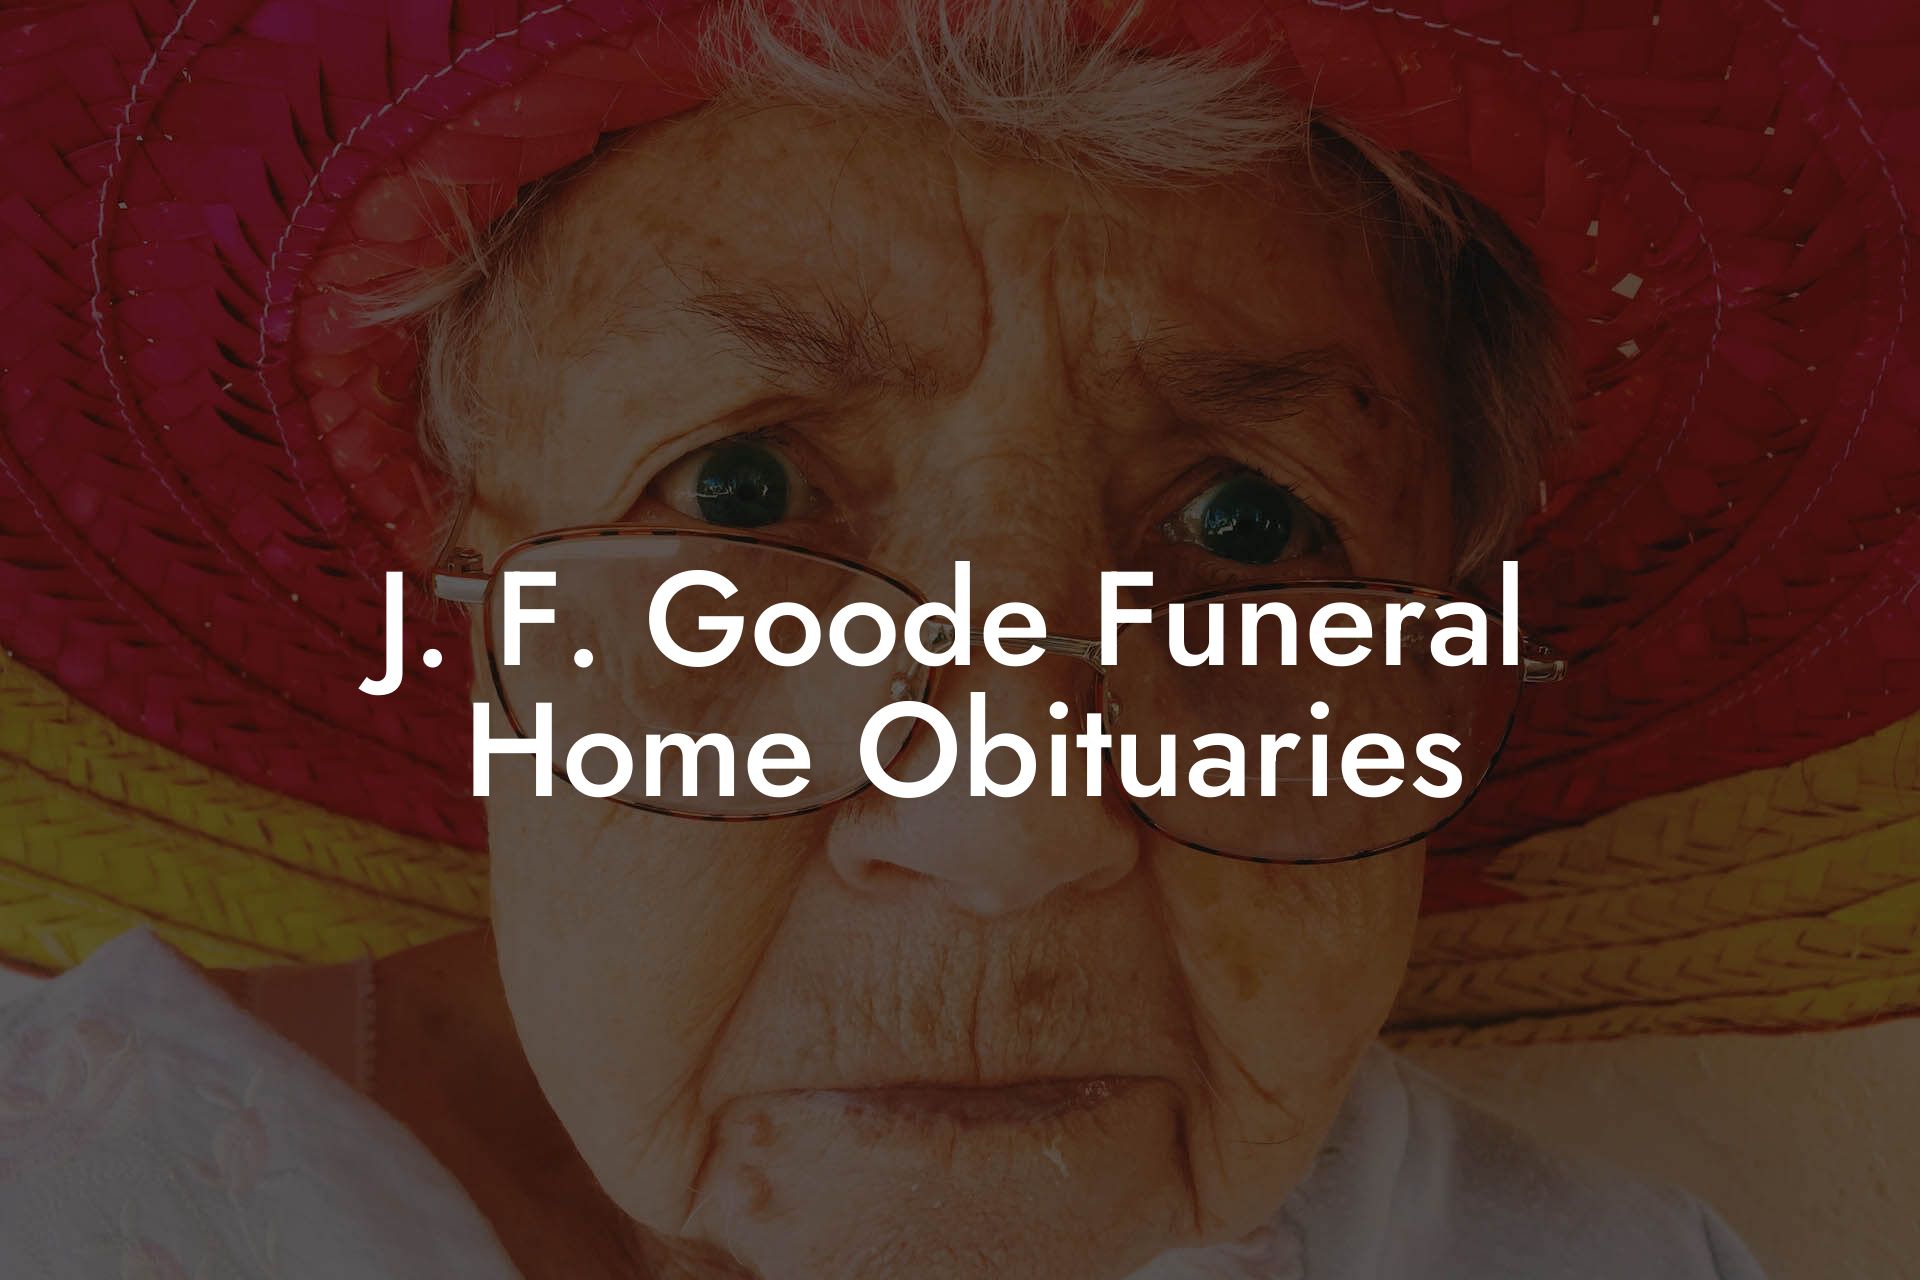 J. F. Goode Funeral Home Obituaries